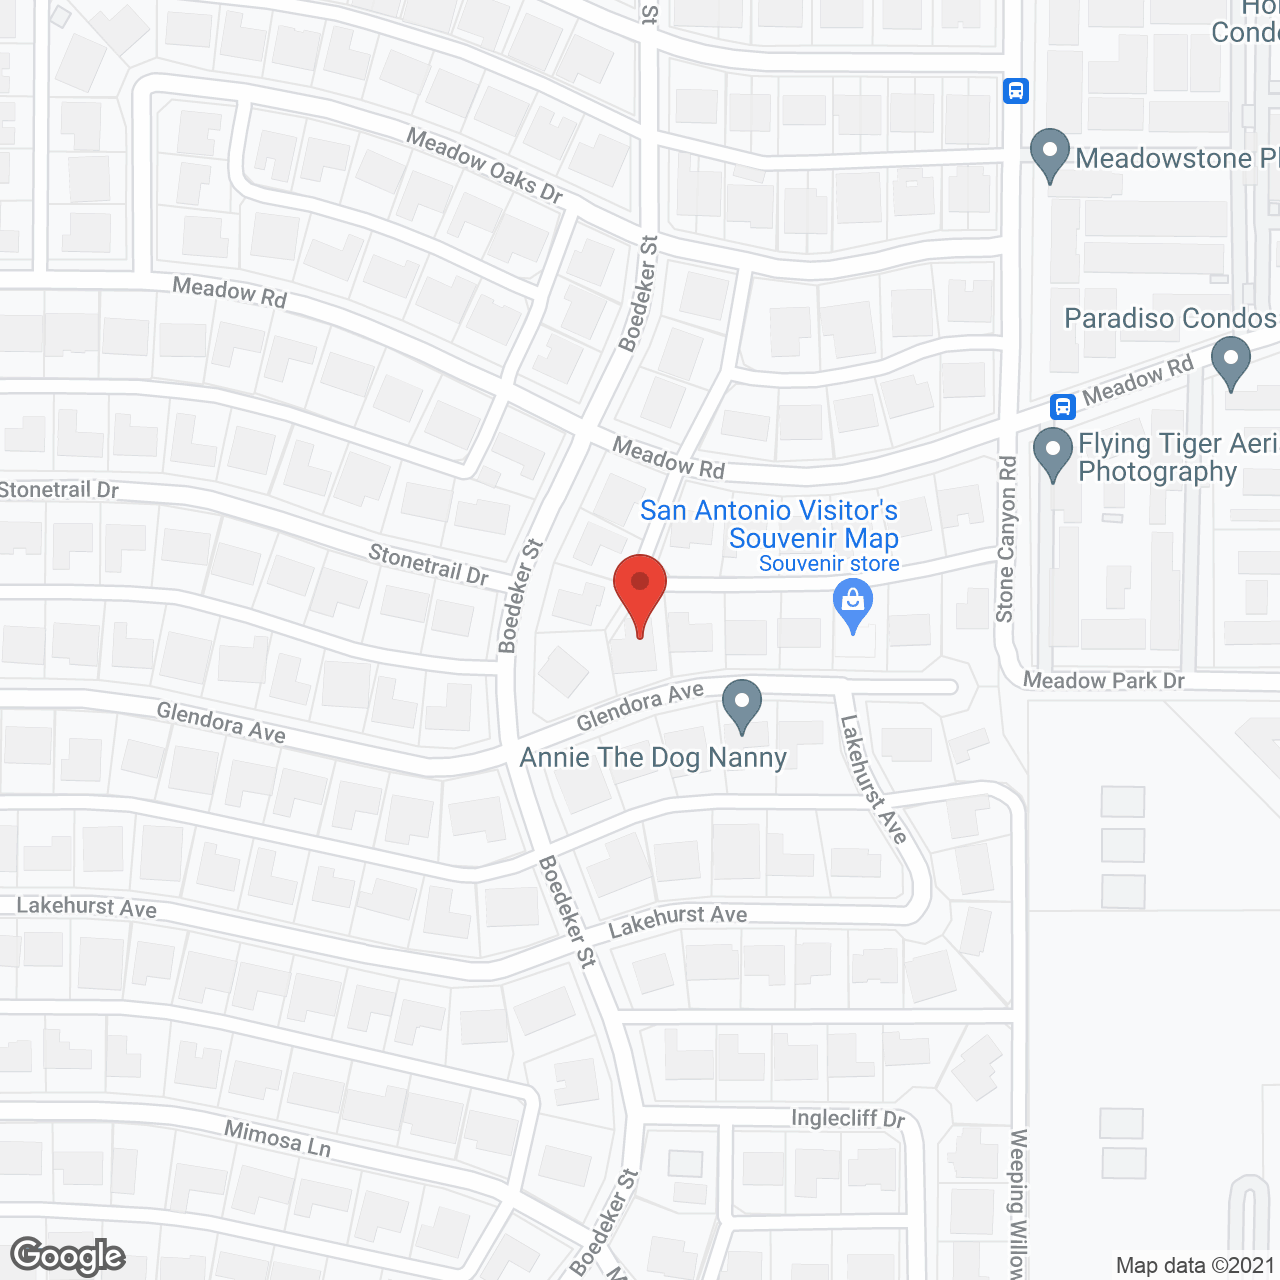 Avalon Memory Care - Glendora Ave in google map